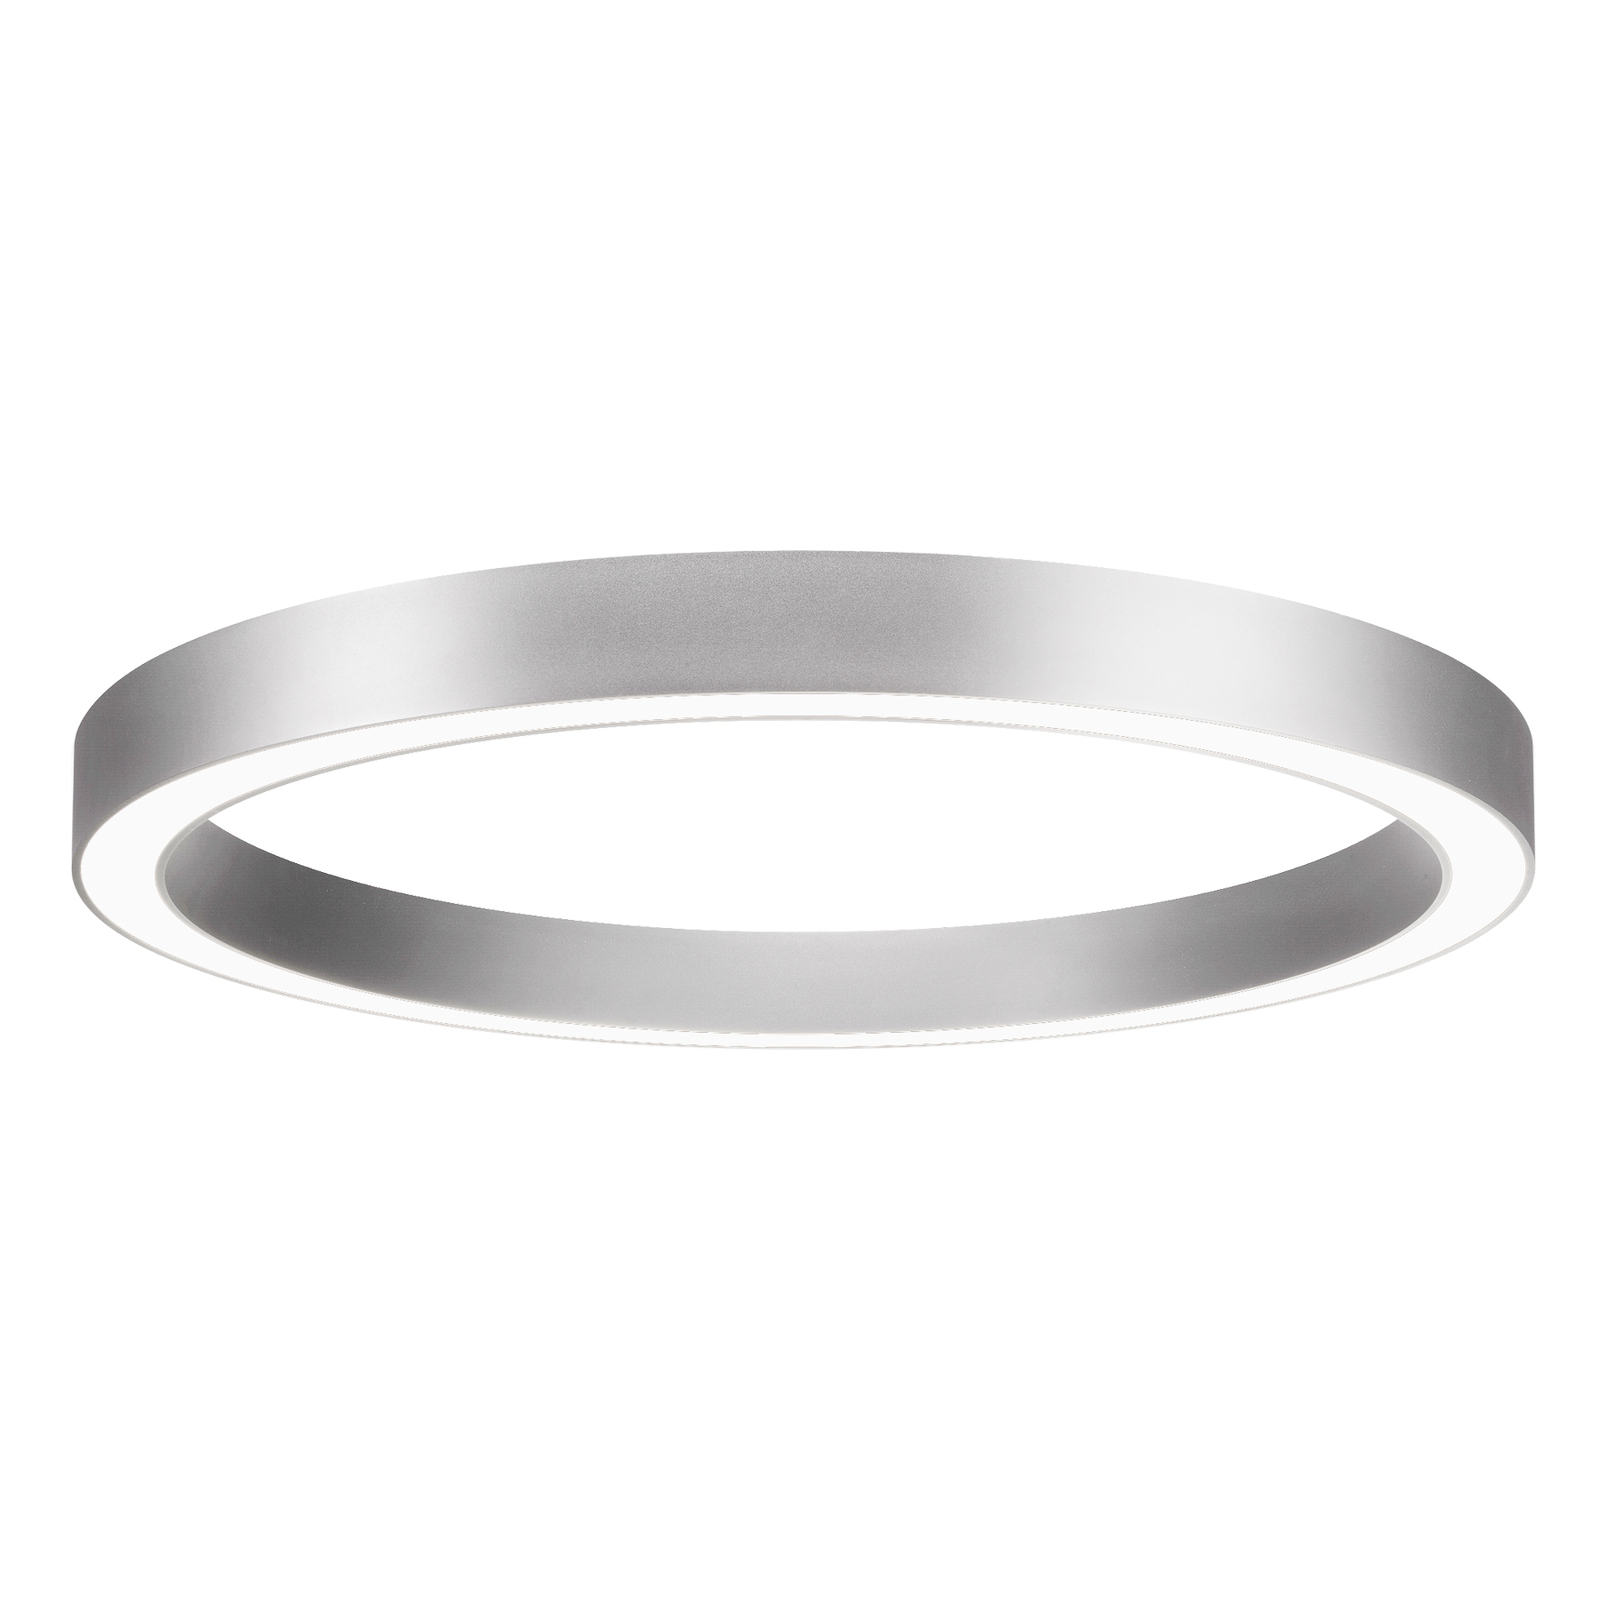 BRUMBERG Biro Cirkel Ring, Ø 45cm, aan/uit, zilver, 4.000 K